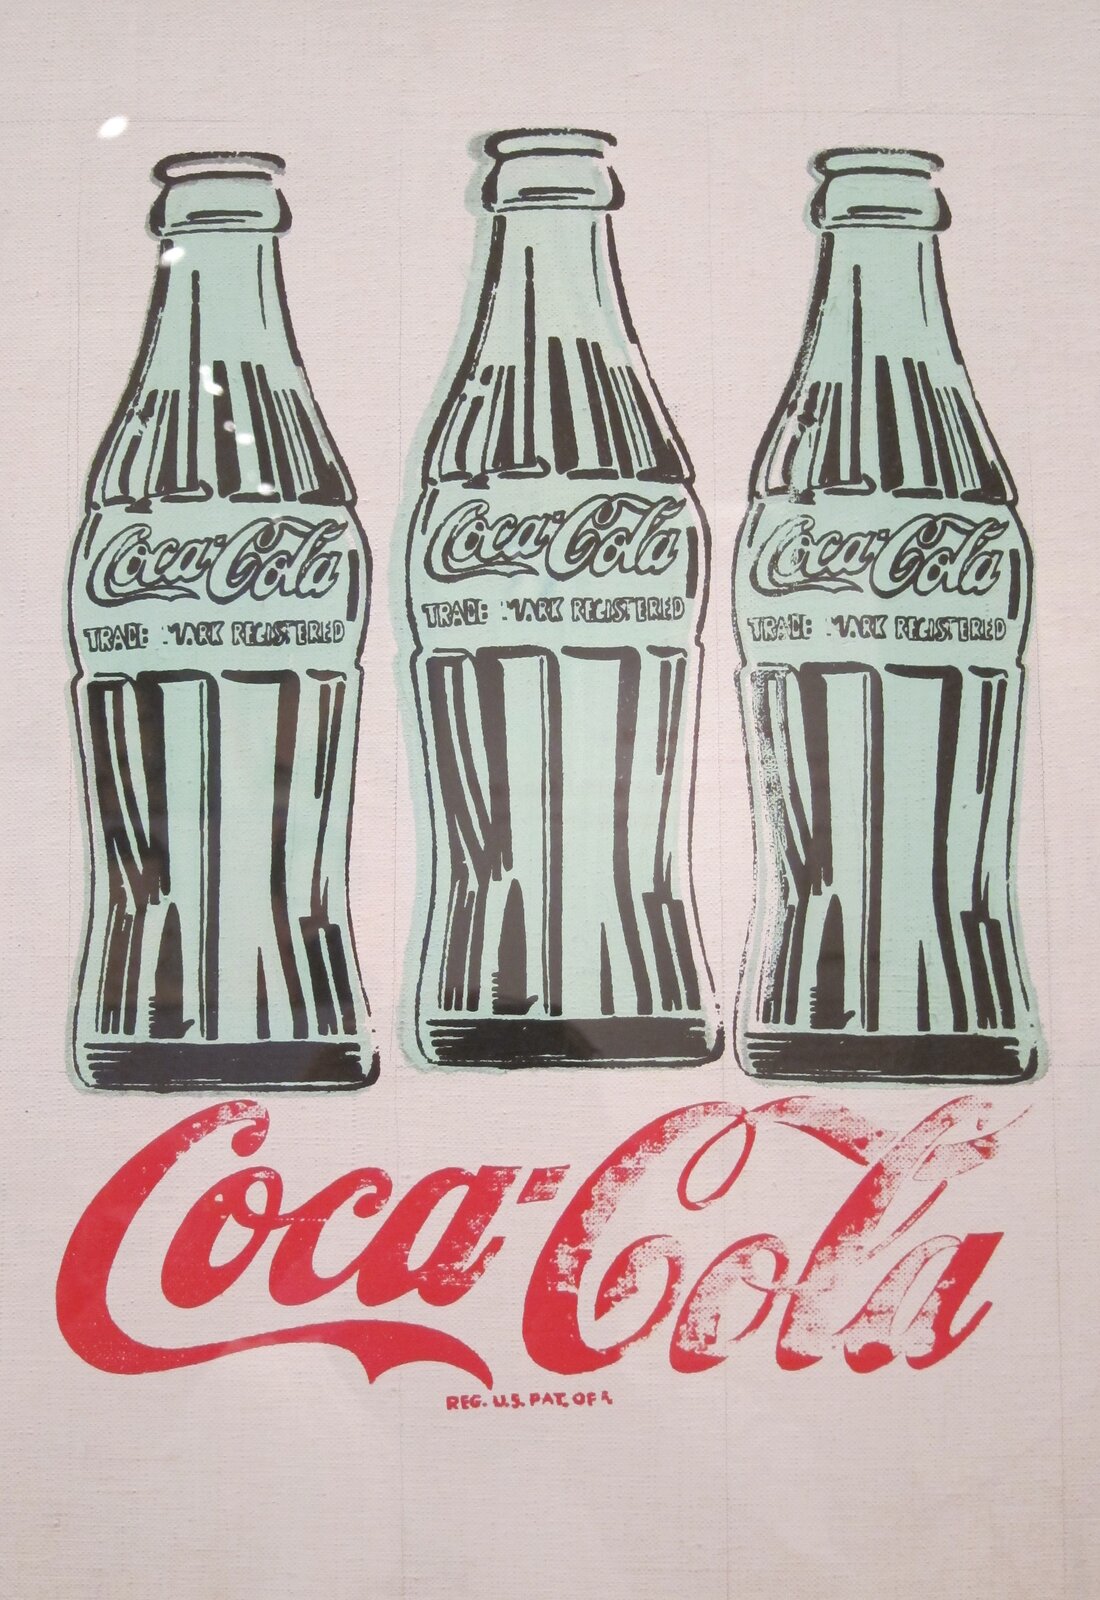 Ilustracja przedstawia pracę Andy'ego Warhola „Coca-Cola”. Sitodruk ukazuje trzy butelki o niebieskawym odcieniu. Pod nimi zamieszczone jest logo Coca-Coli, które po prawej stronie jest słabiej odbite.